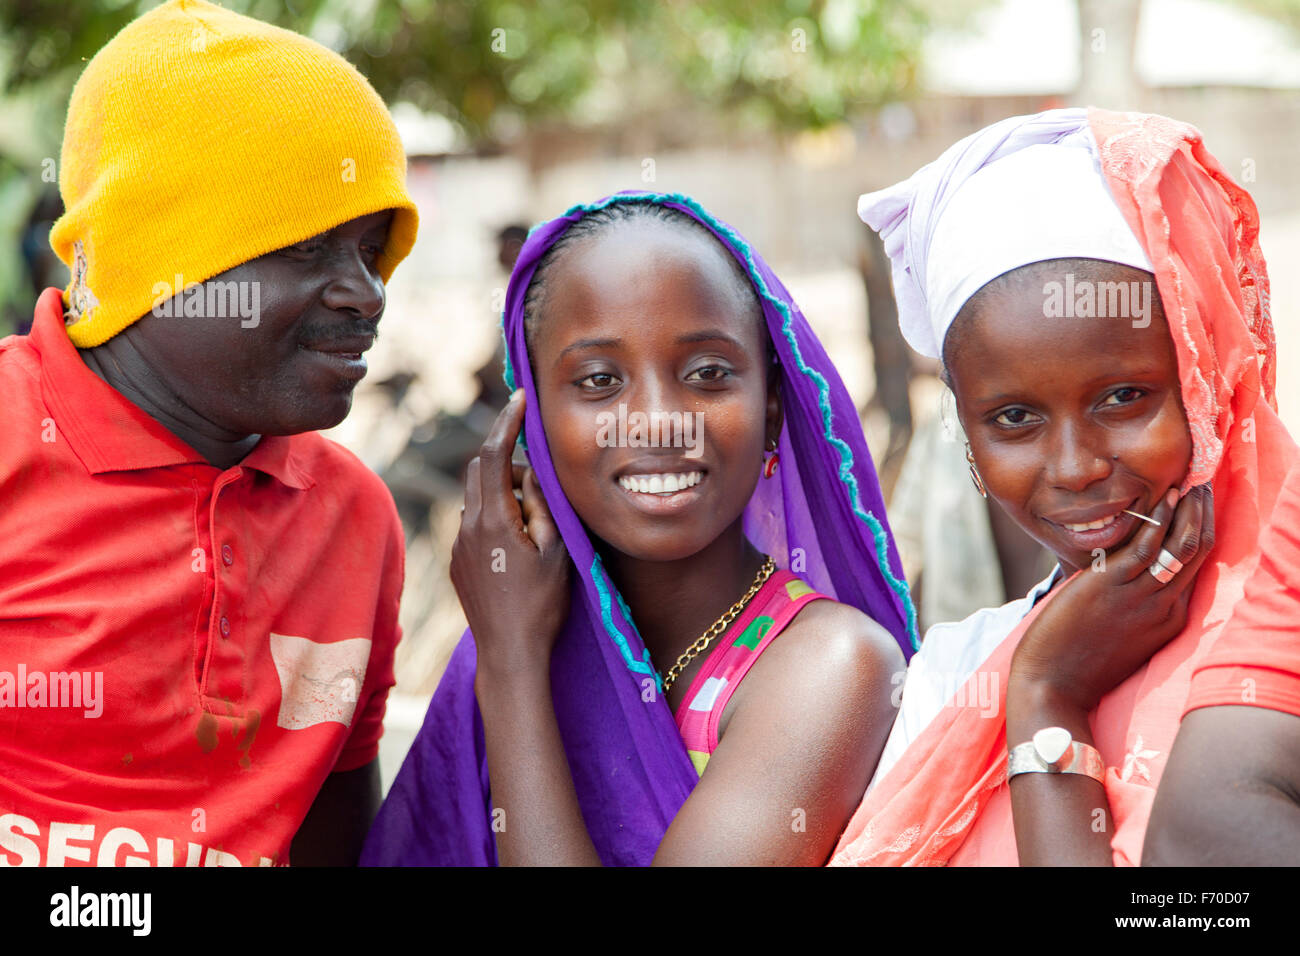 Gabu, Guinea-Bissau - 10. Mai 2014: Mann versucht, mit zwei afrikanischen Mädchen zu flirten. Tägliche Szenen aus ländlichen Guinea-Bissau Stockfoto